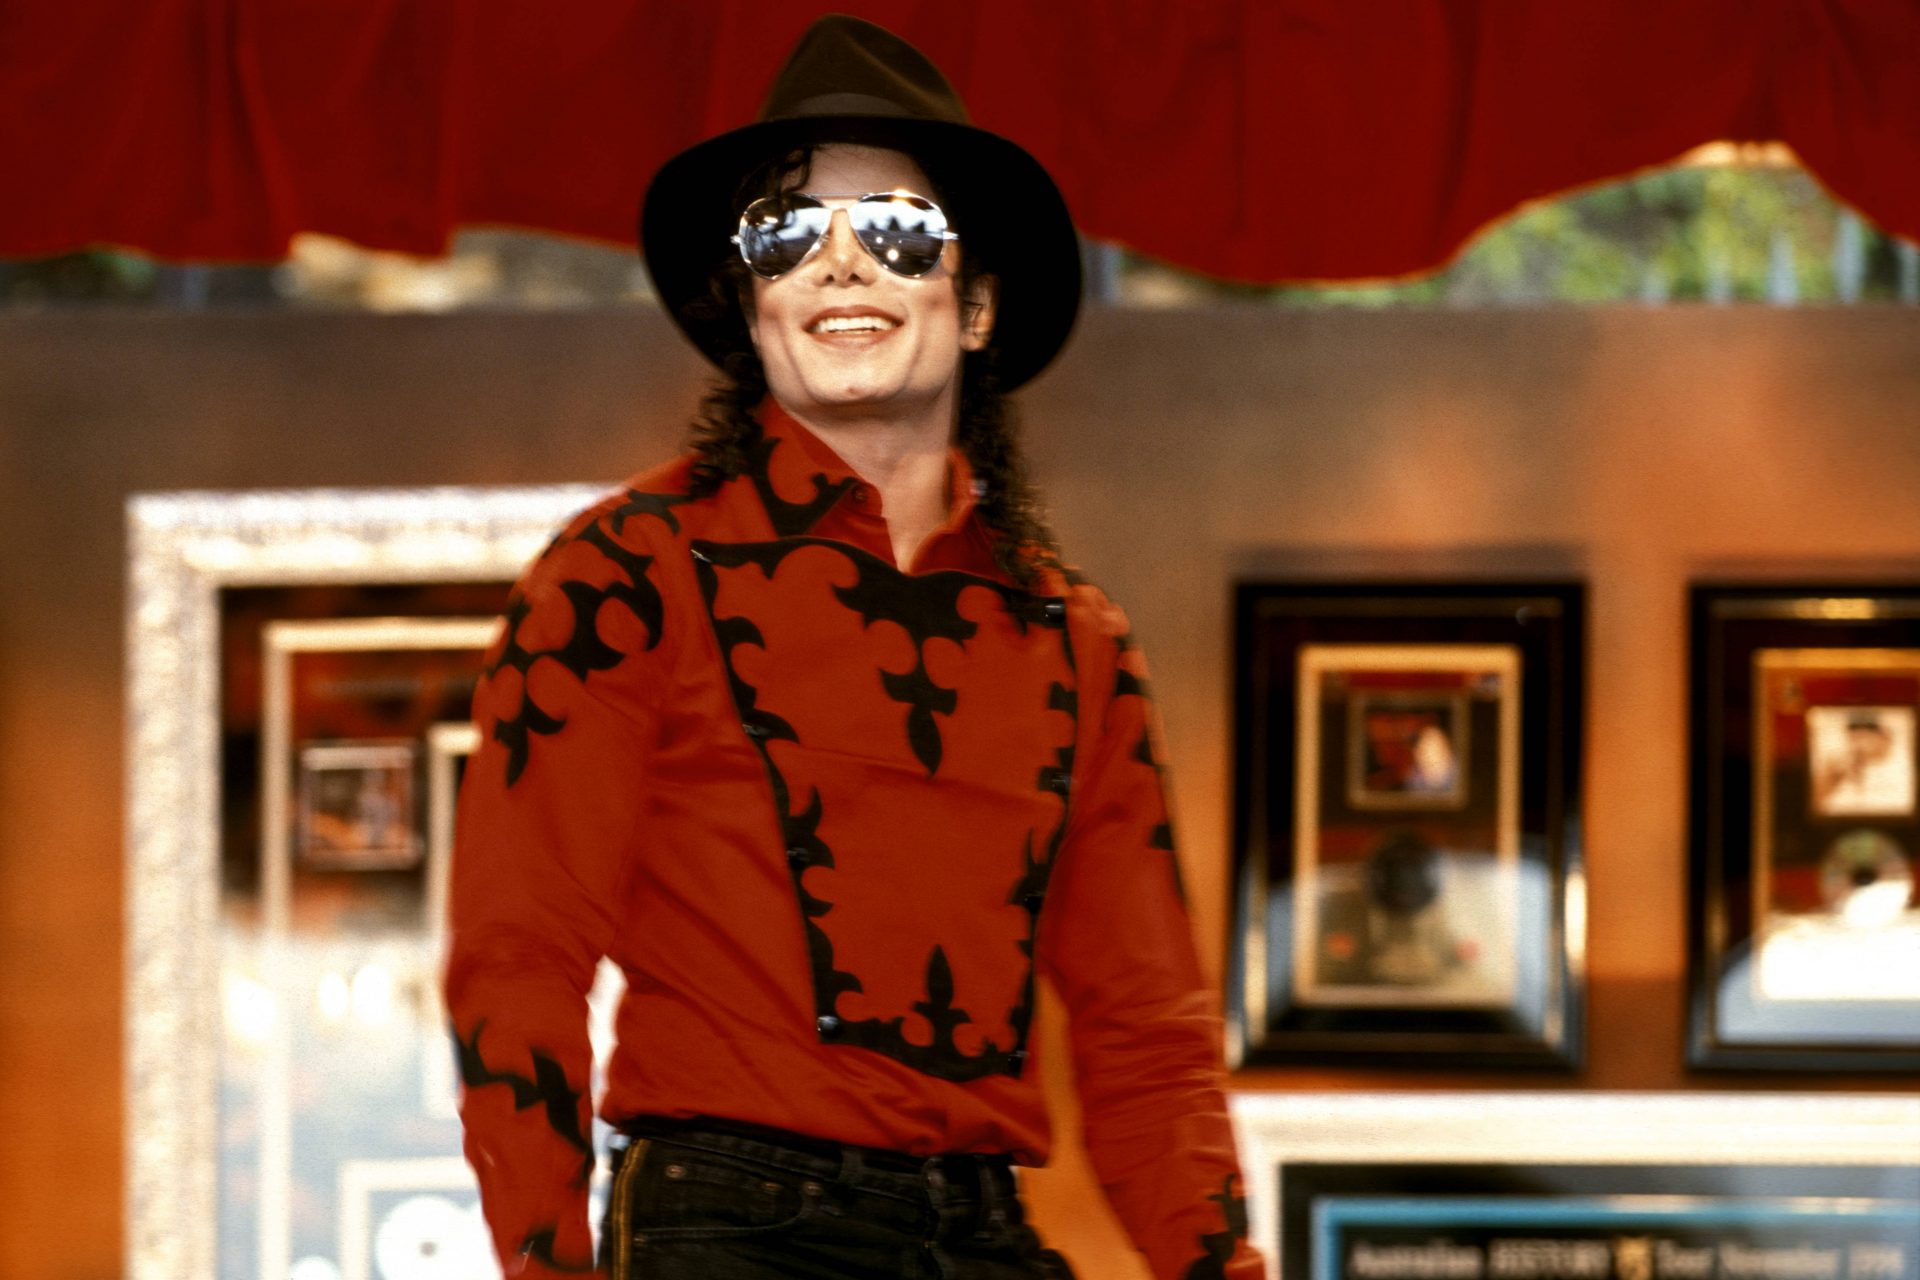 Michael Jackson – 115 million dollars